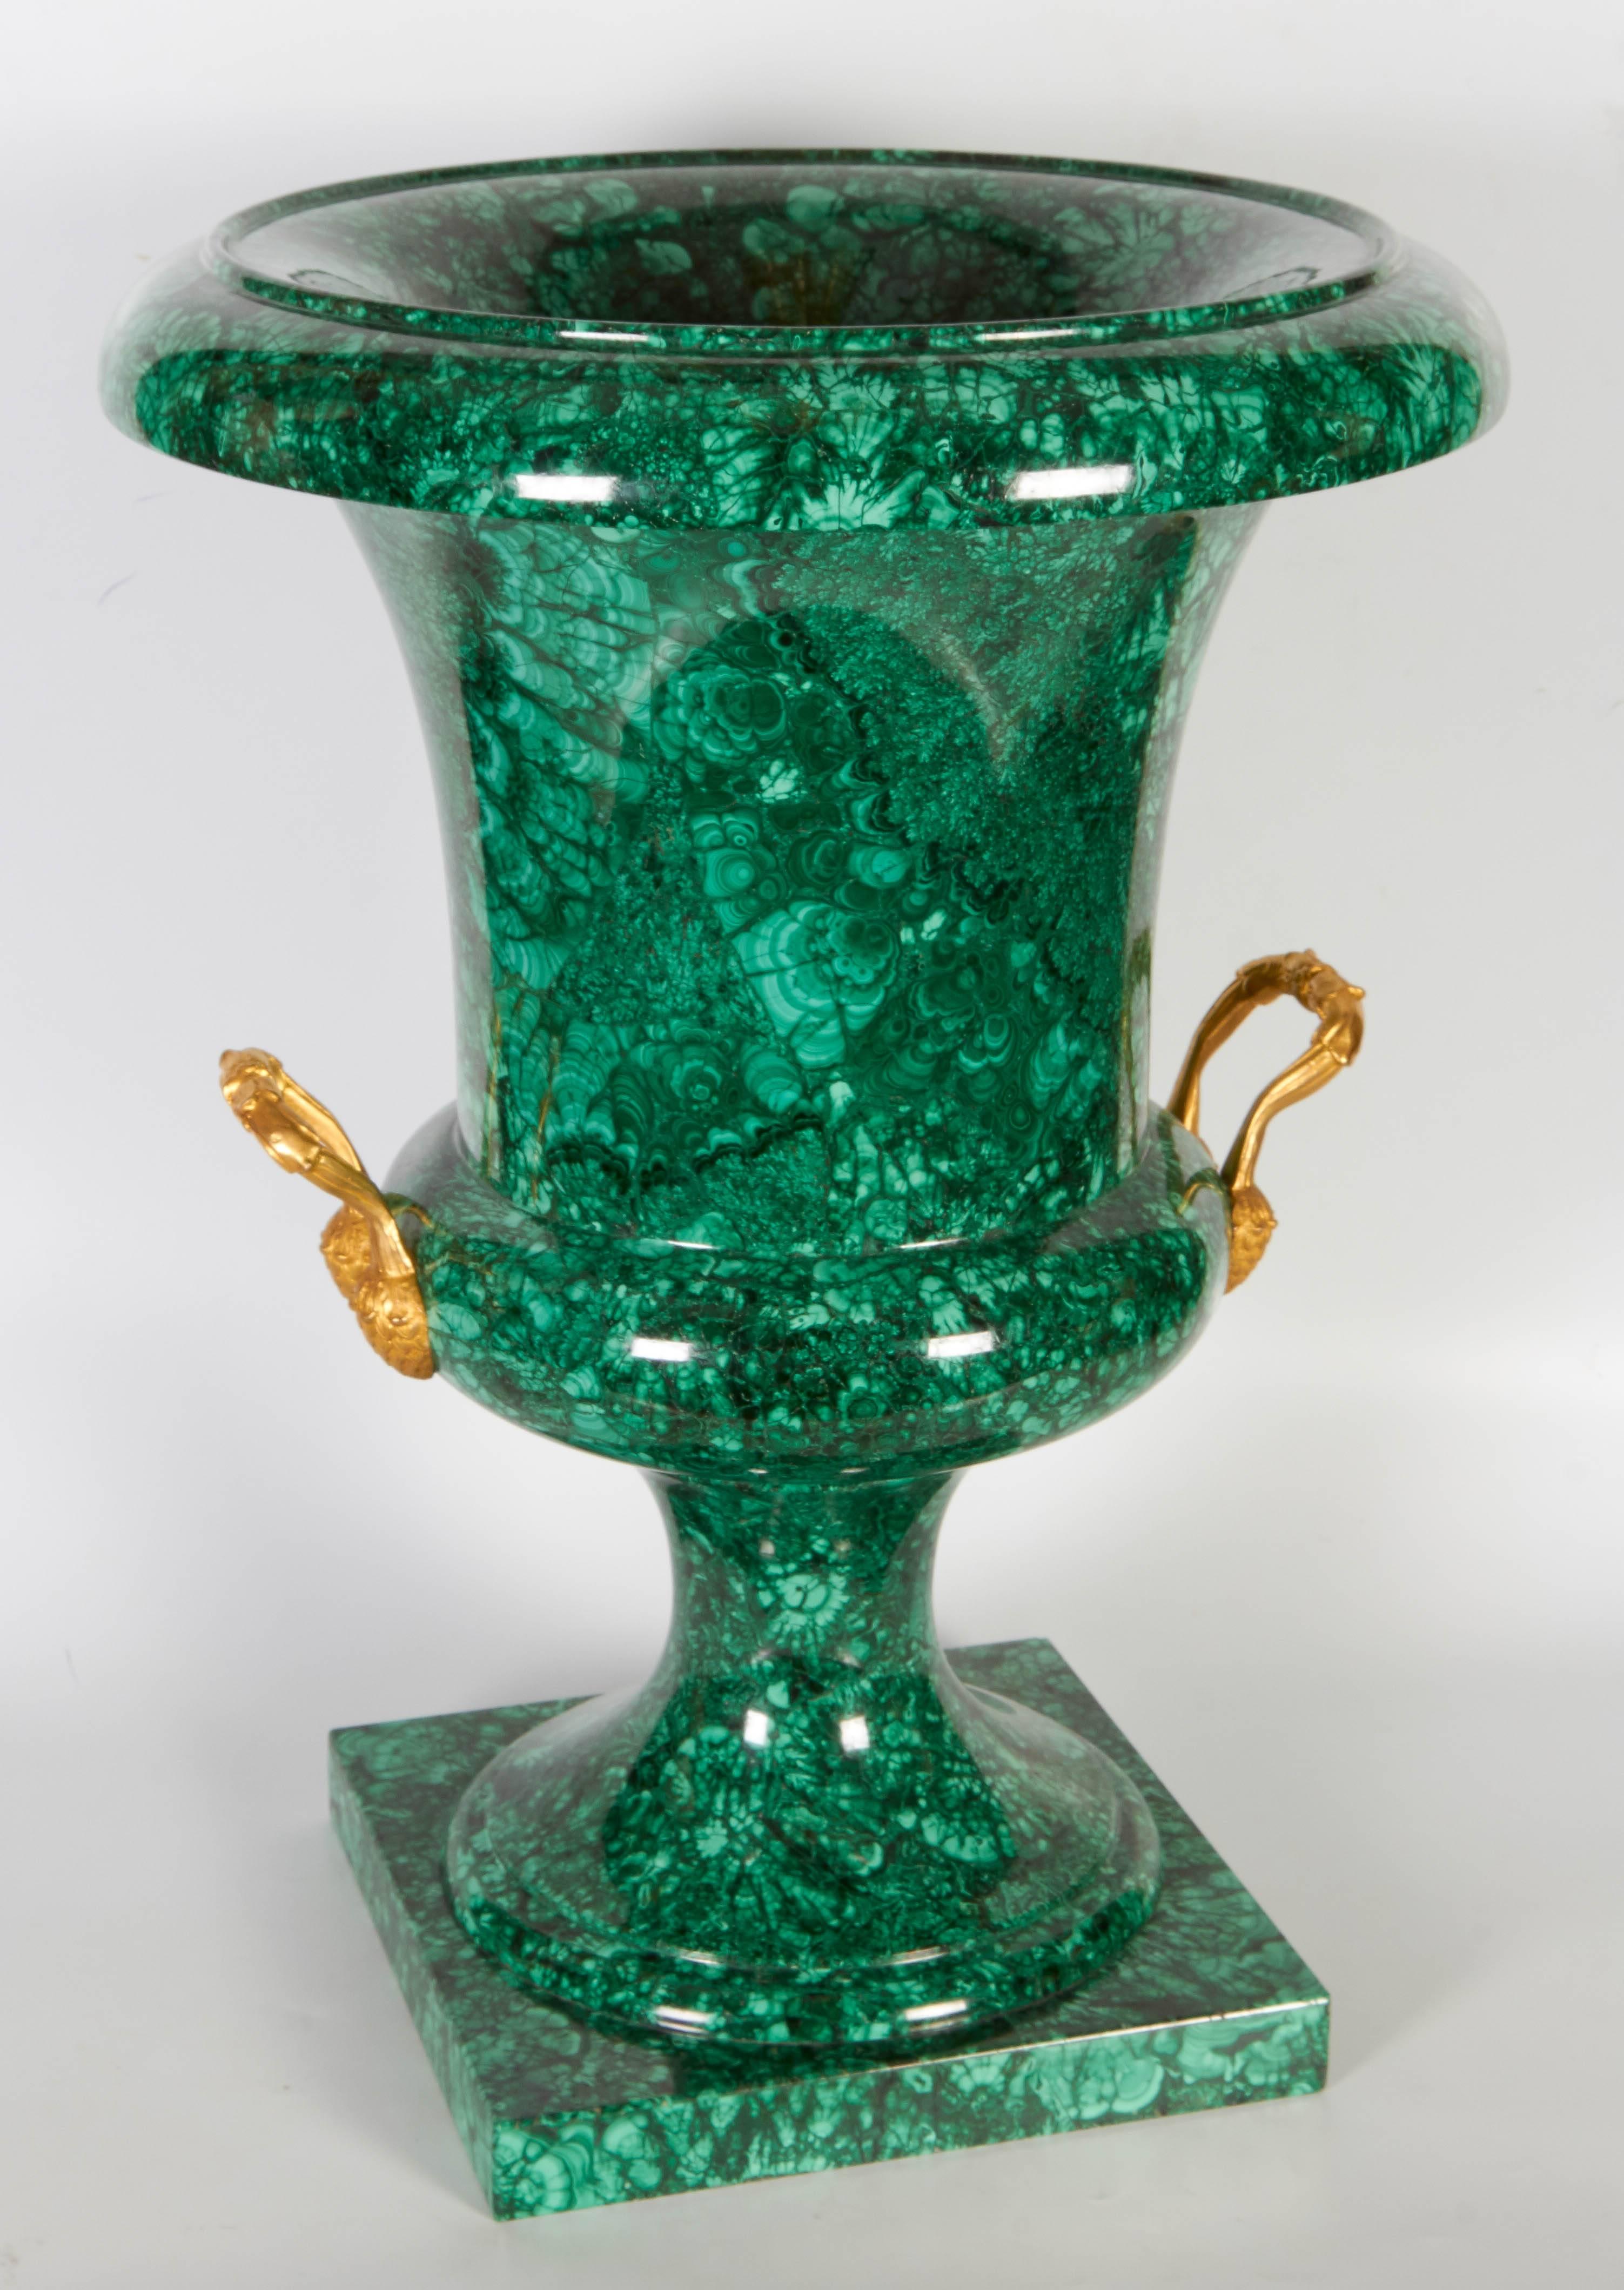 Eine große russische neoklassizistische Urne oder Vase aus Malachit in Form einer Campana, mit zwei Henkeln aus Ormolu, die mit Eicheln modelliert sind, auf einem kreisförmigen Fuß mit quadratischem Stufensockel, 
19. Jahrhundert, russisch,